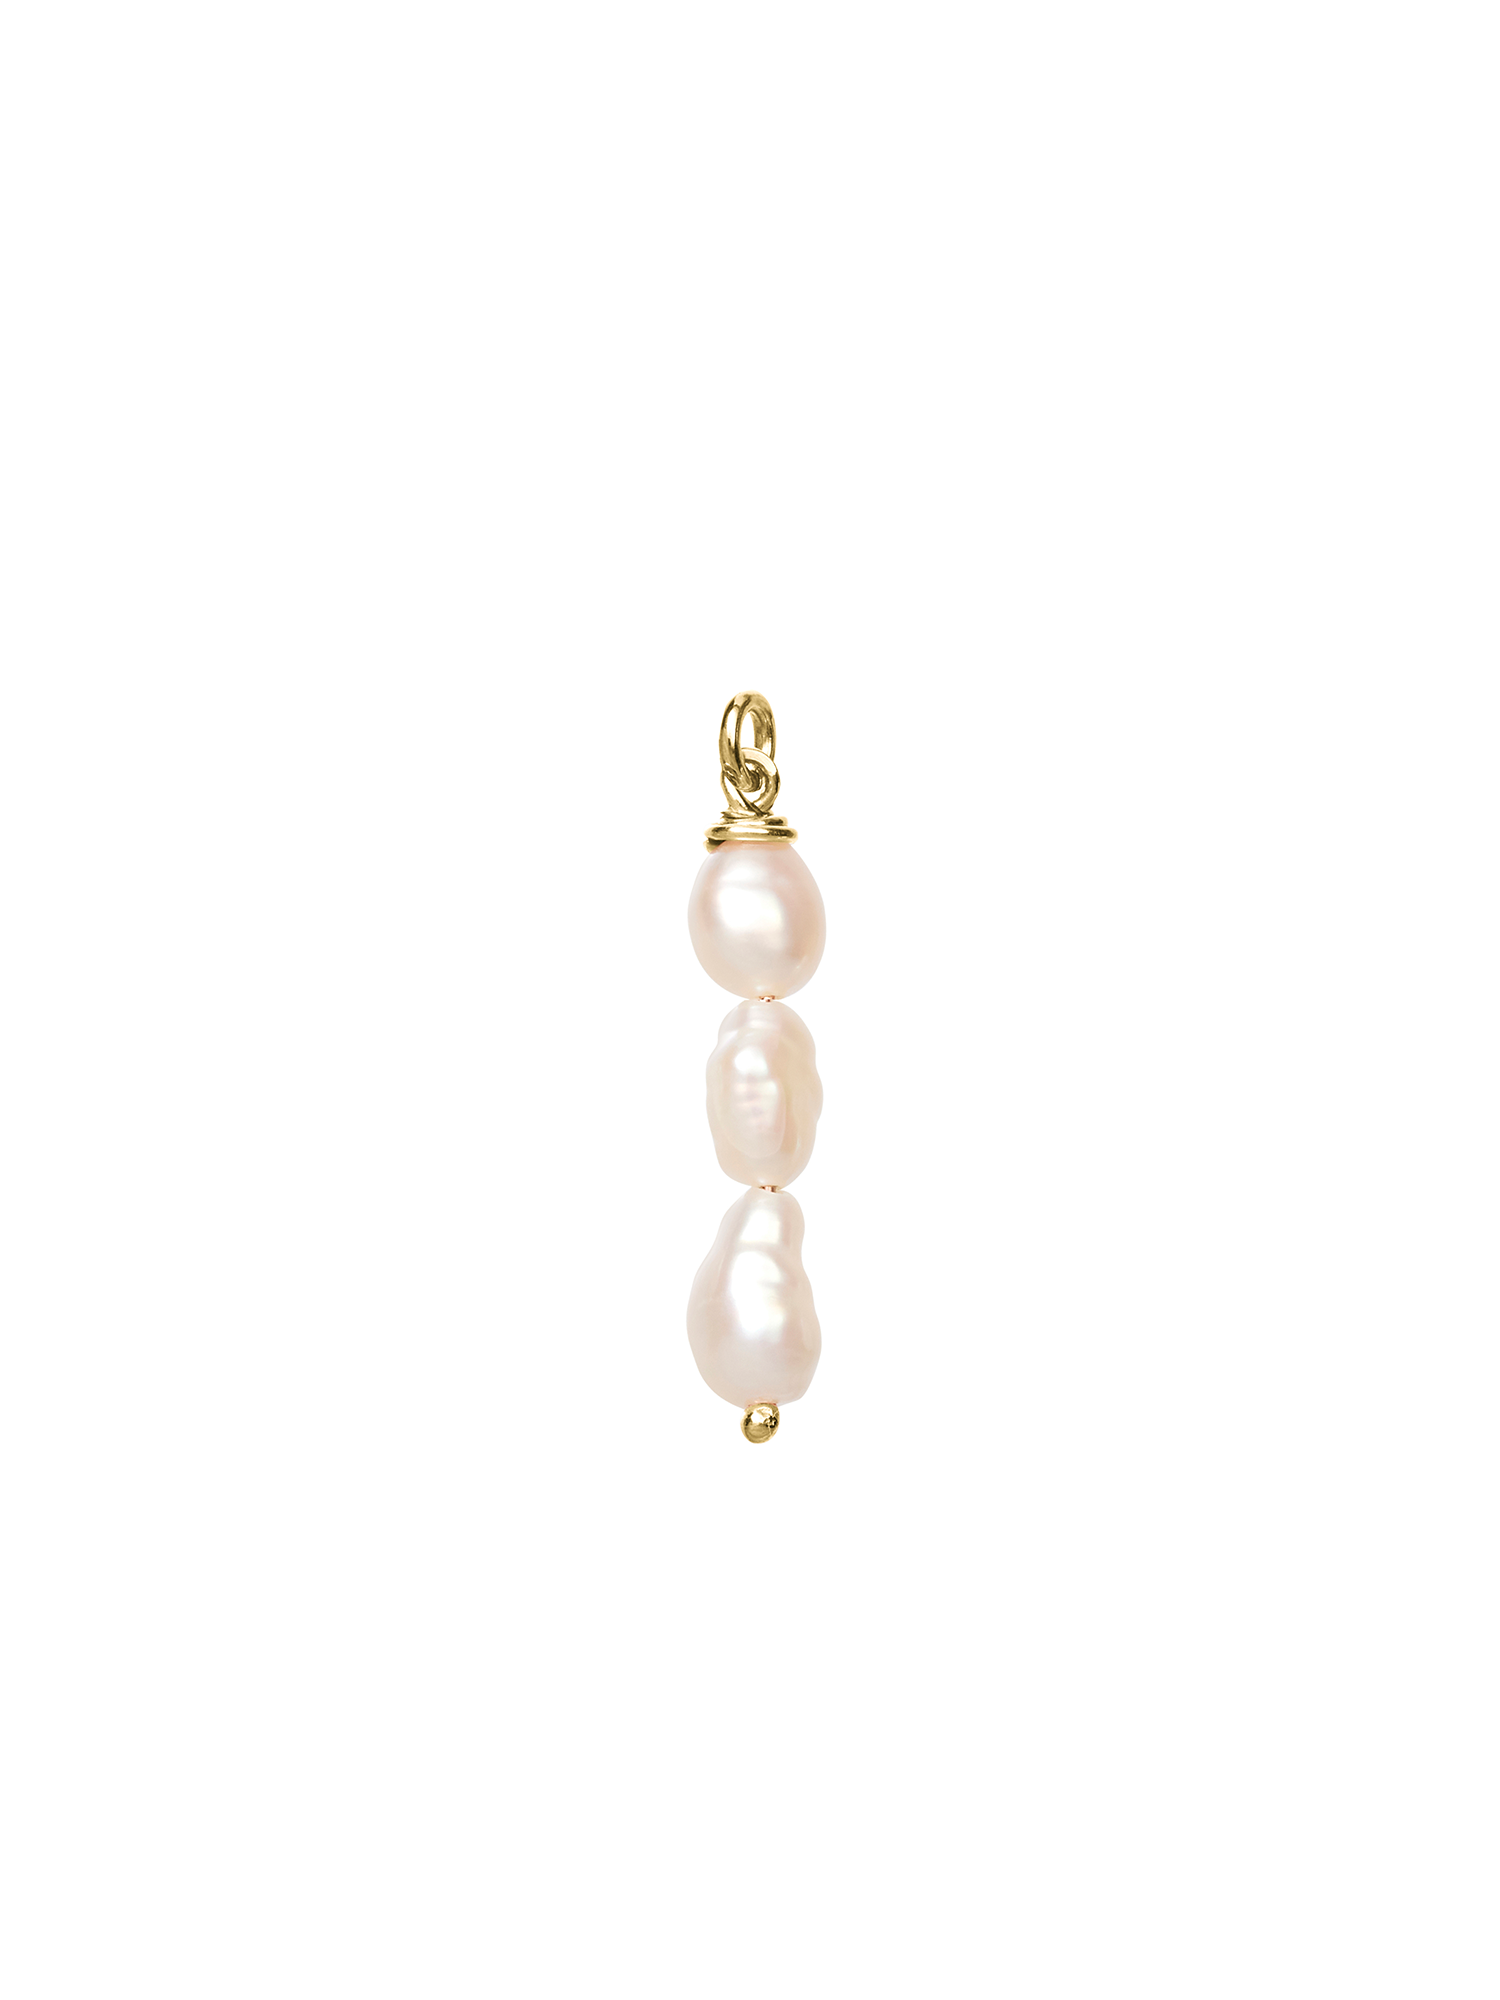 triple drop pearl earring charm